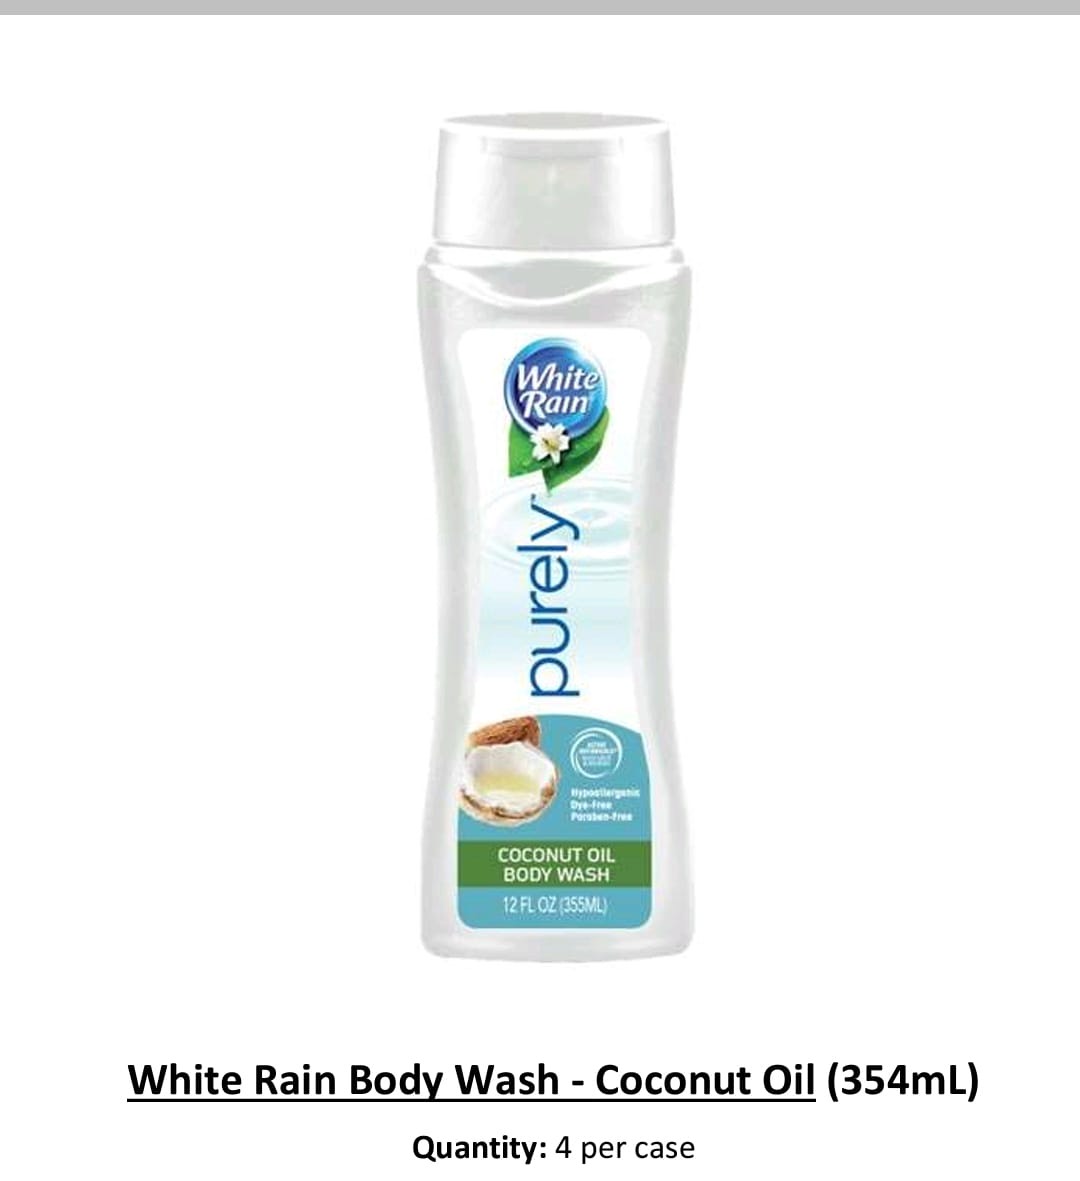 46081 - Brand New White Rain Body Wash USA